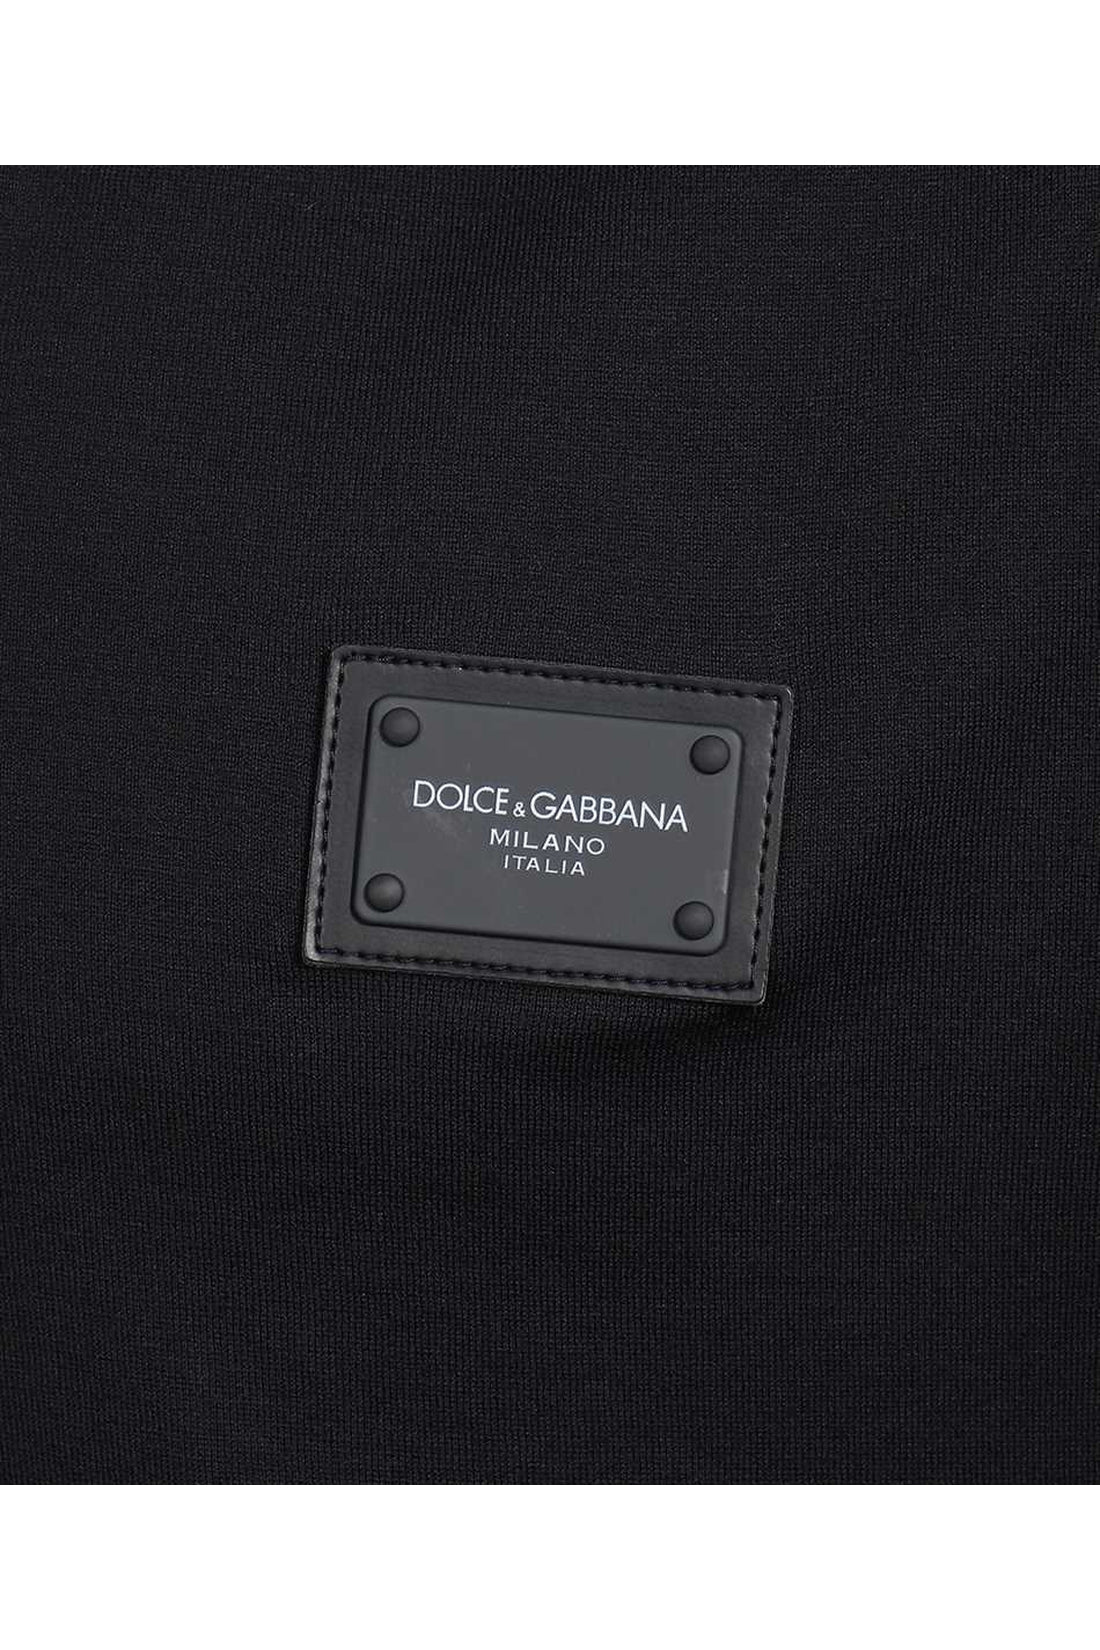 Dolce & Gabbana-OUTLET-SALE-Logo detail cotton T-shirt-ARCHIVIST